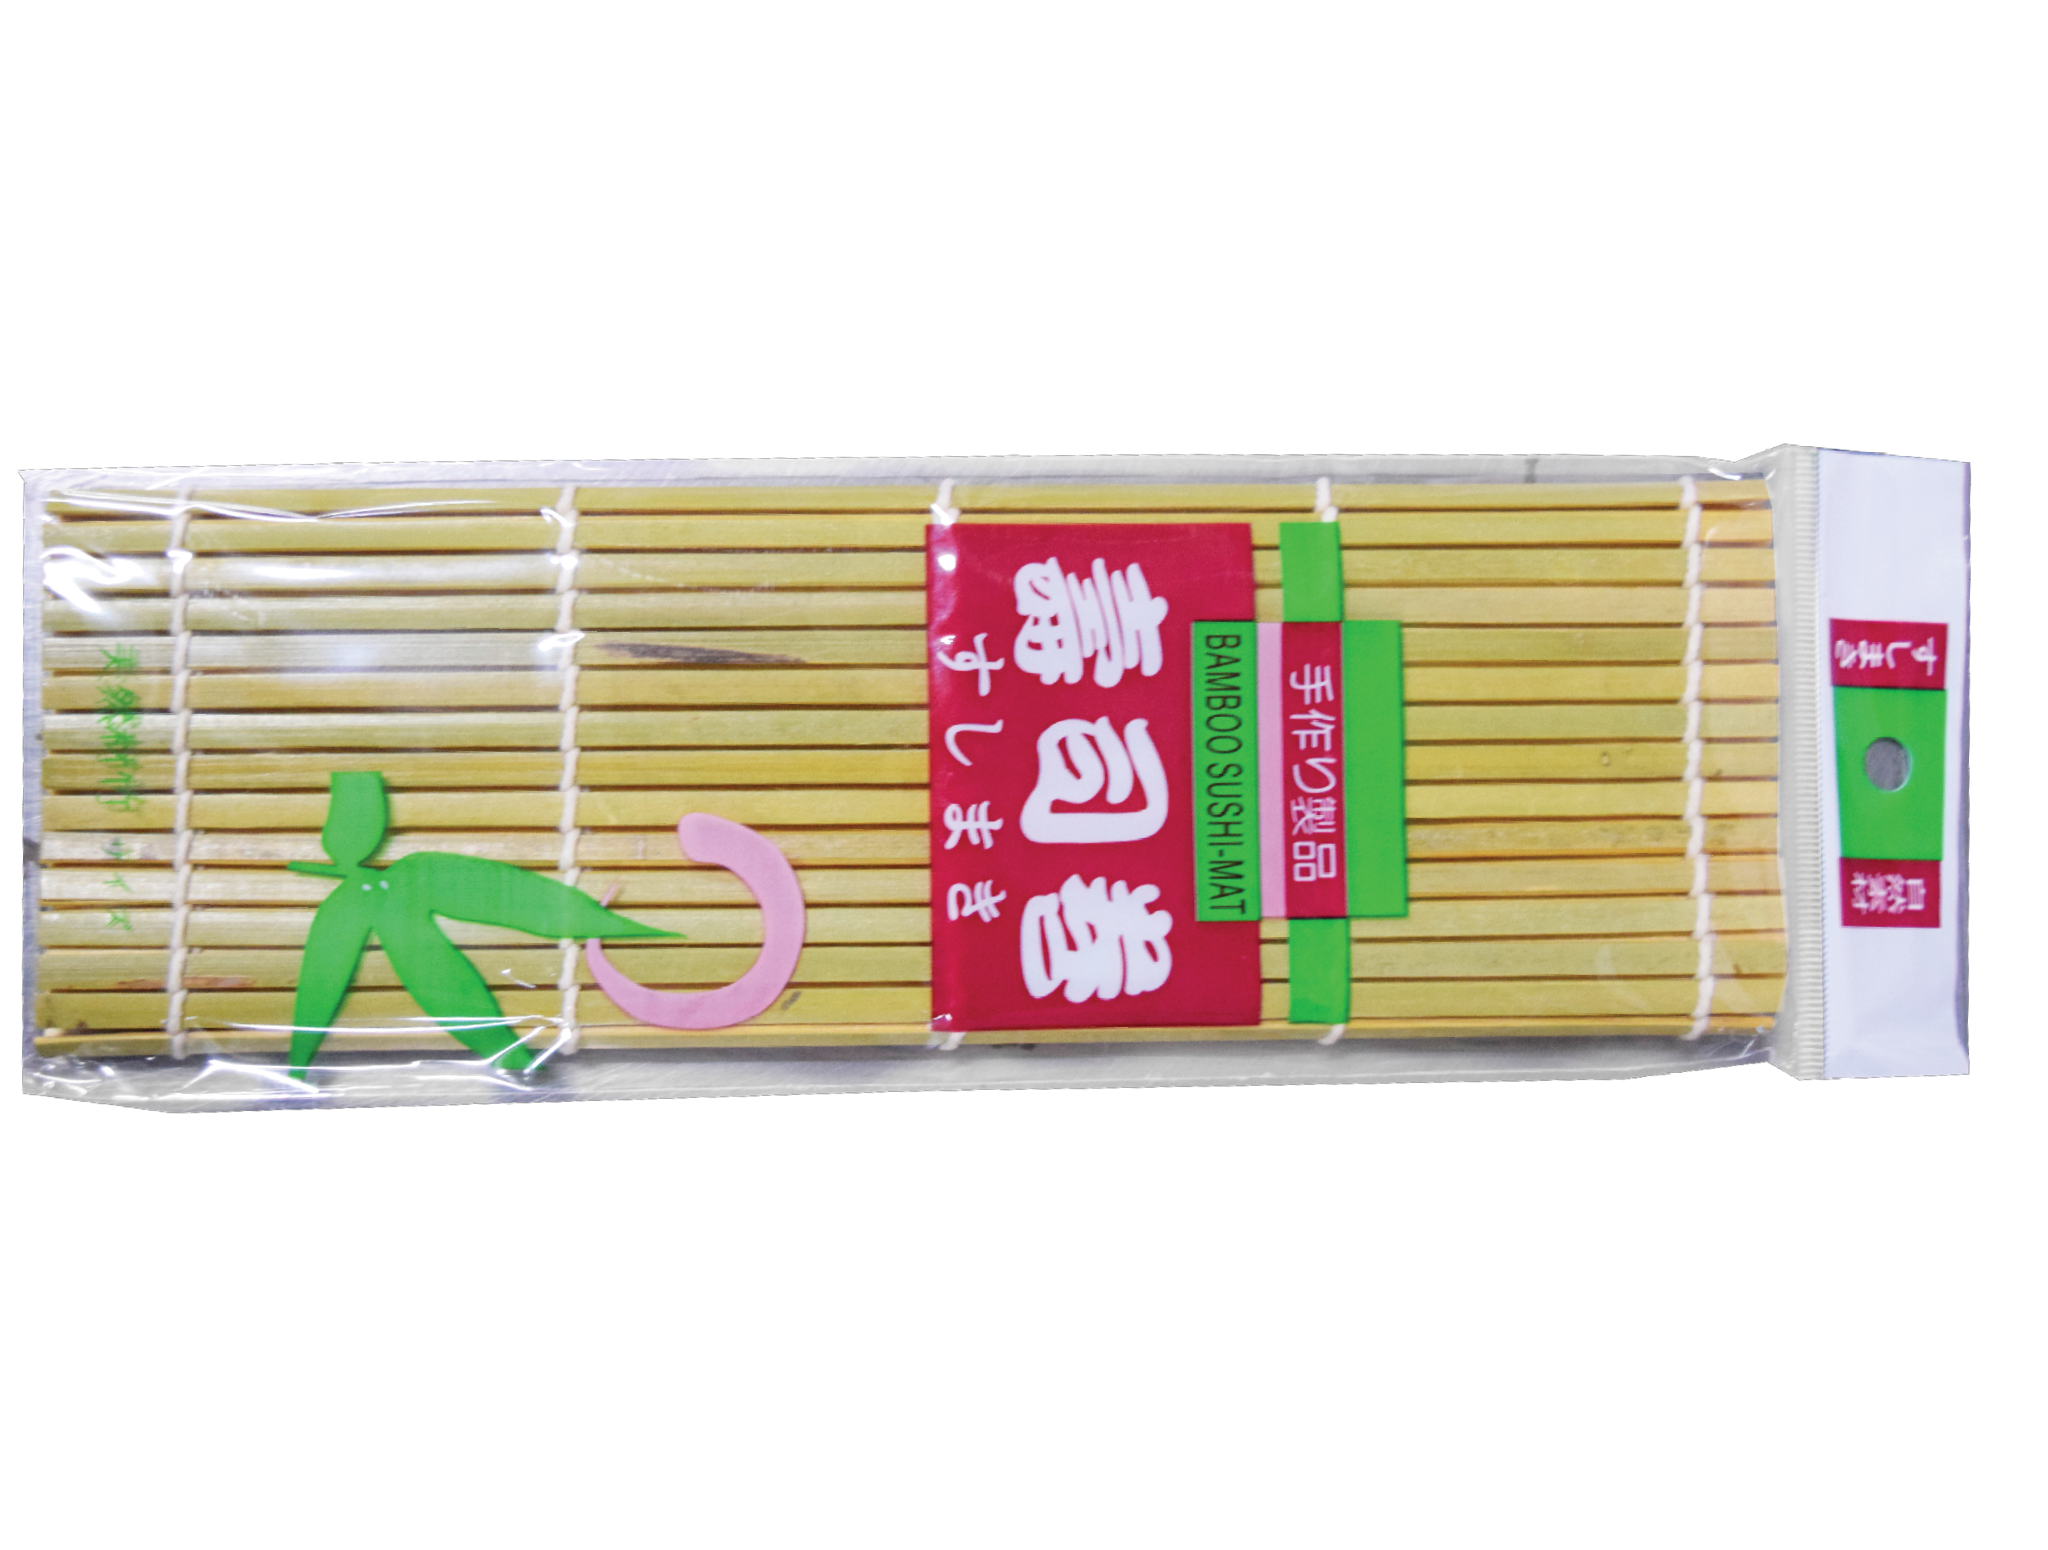 Bamboo Sushi Rolling Mat, 9.5